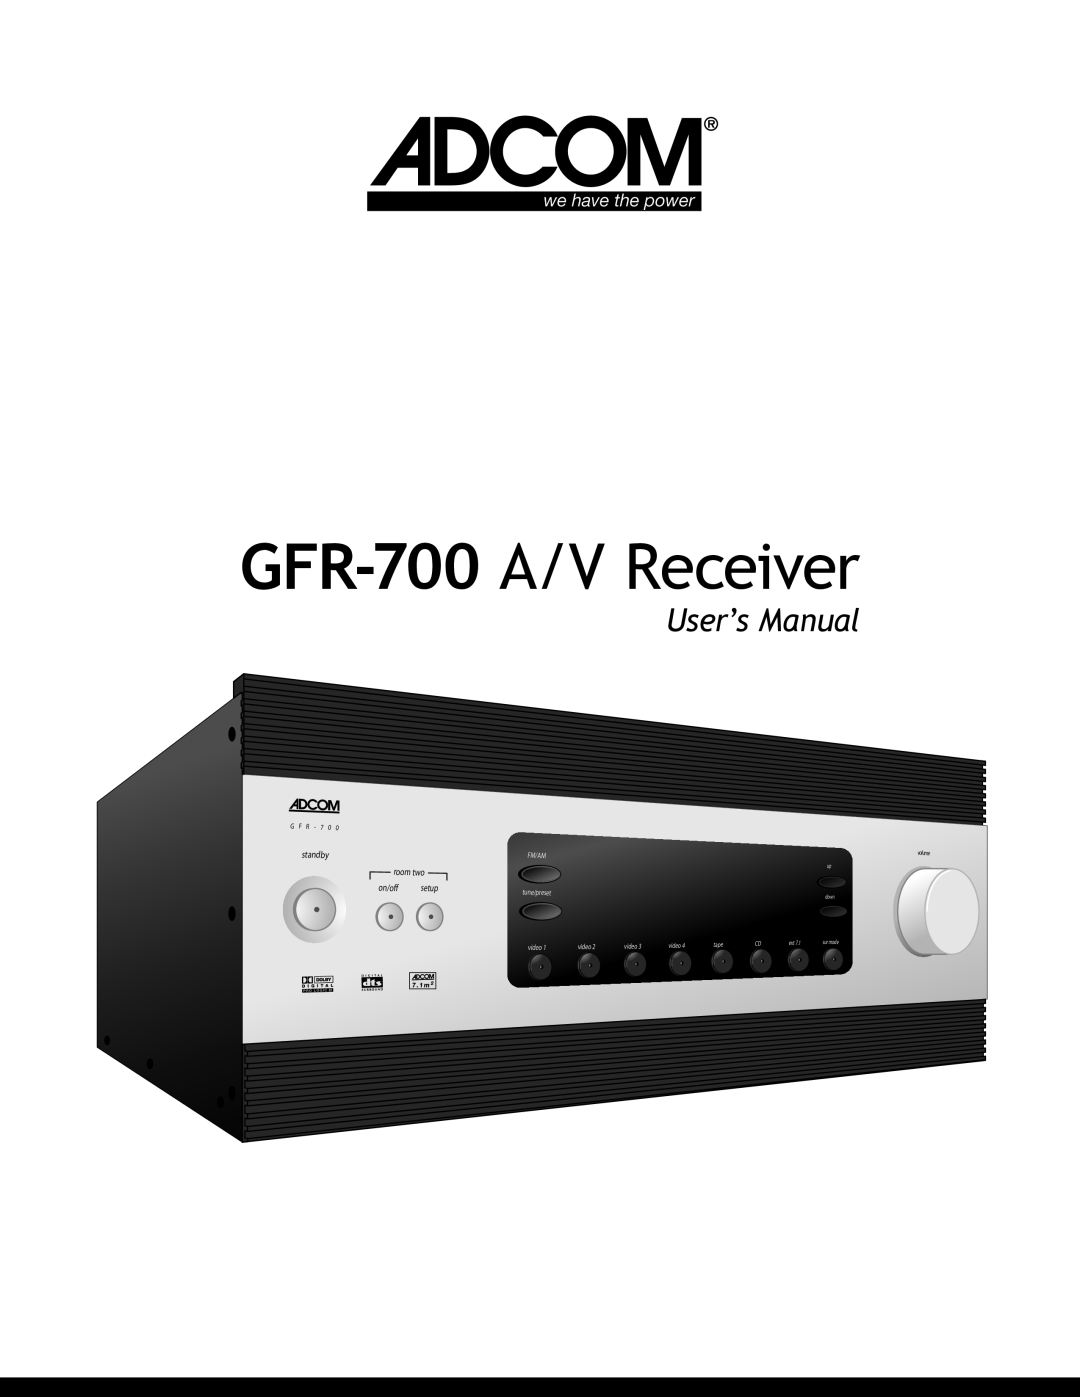 Adcom user manual GFR-700 A/V Receiver 